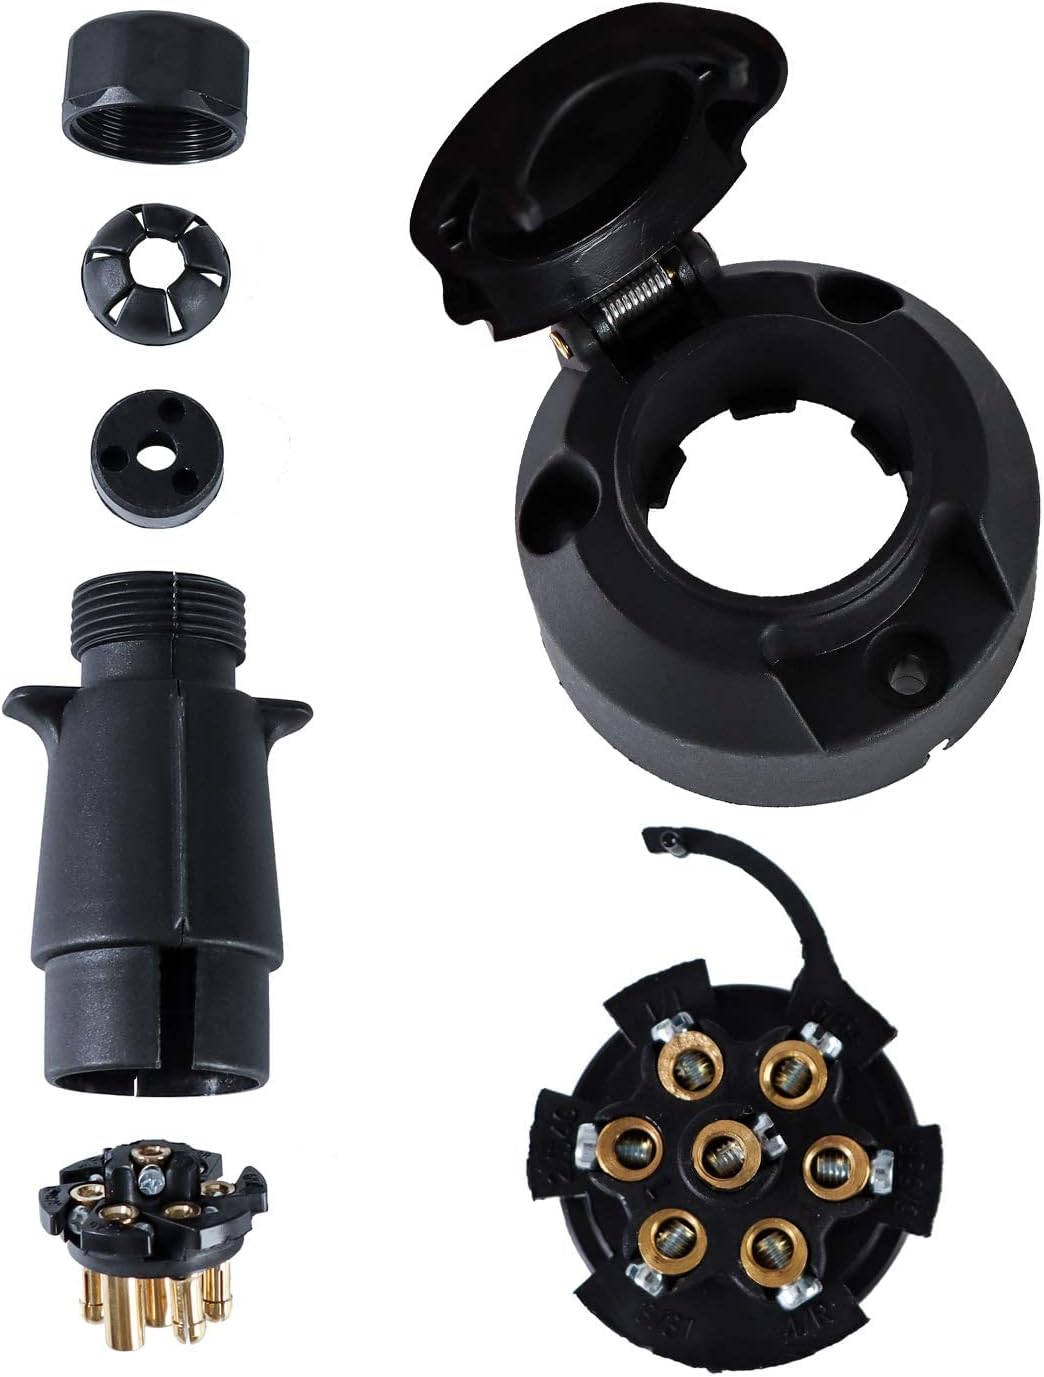 12V Trailer Plug and Socket Kit, 7 Pin Trailer Plug and 7 Pin Trailer Socket Connector Waterproof